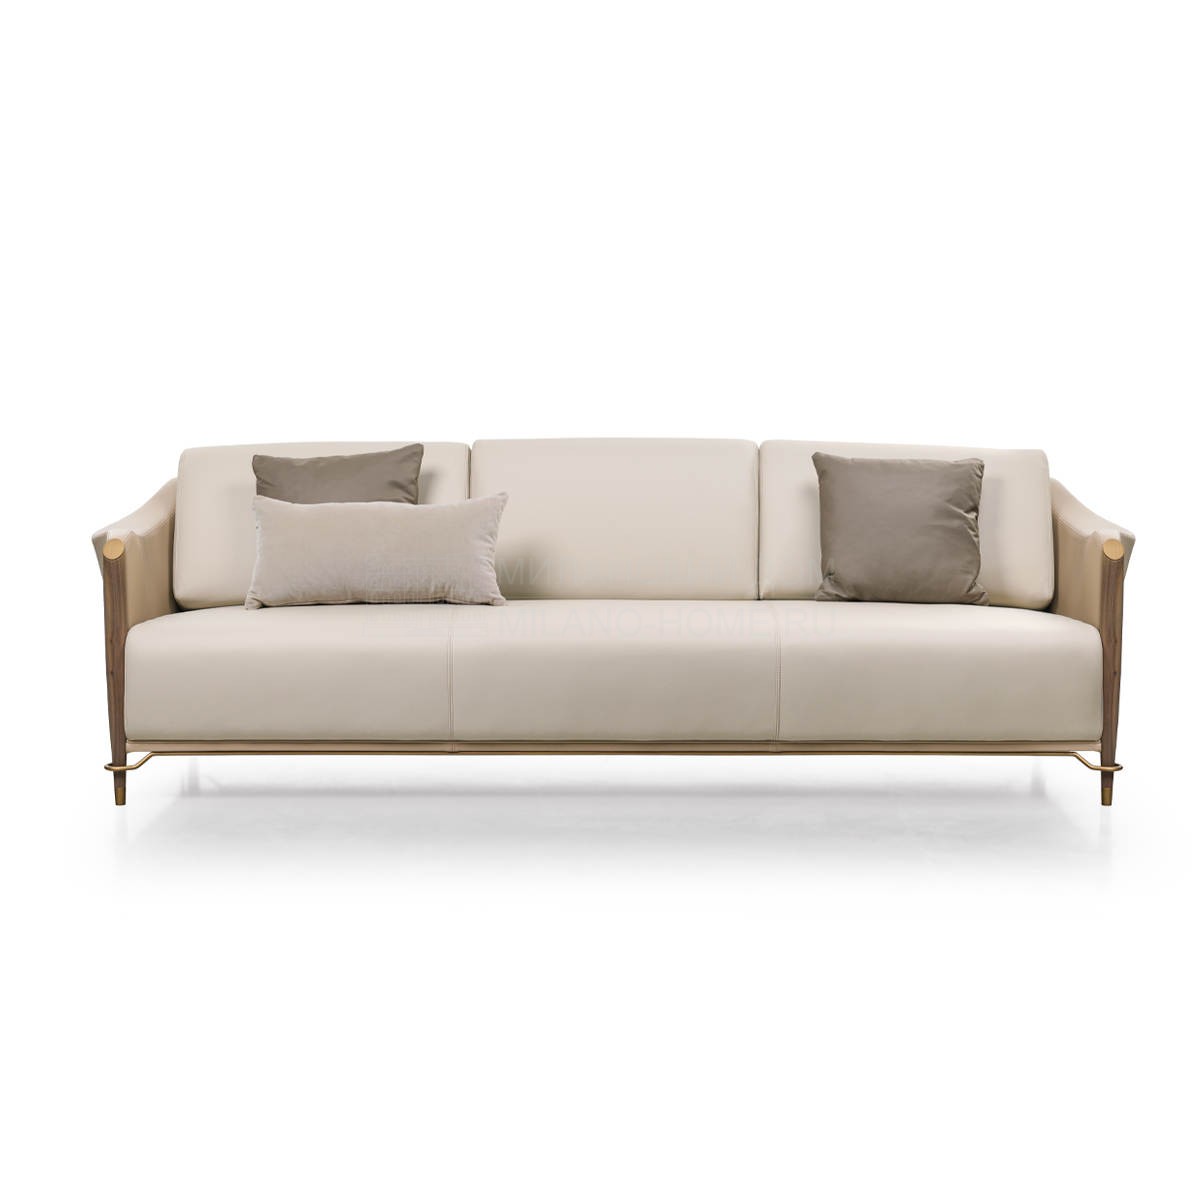 Прямой диван Melting Light sofa из Италии фабрики TURRI